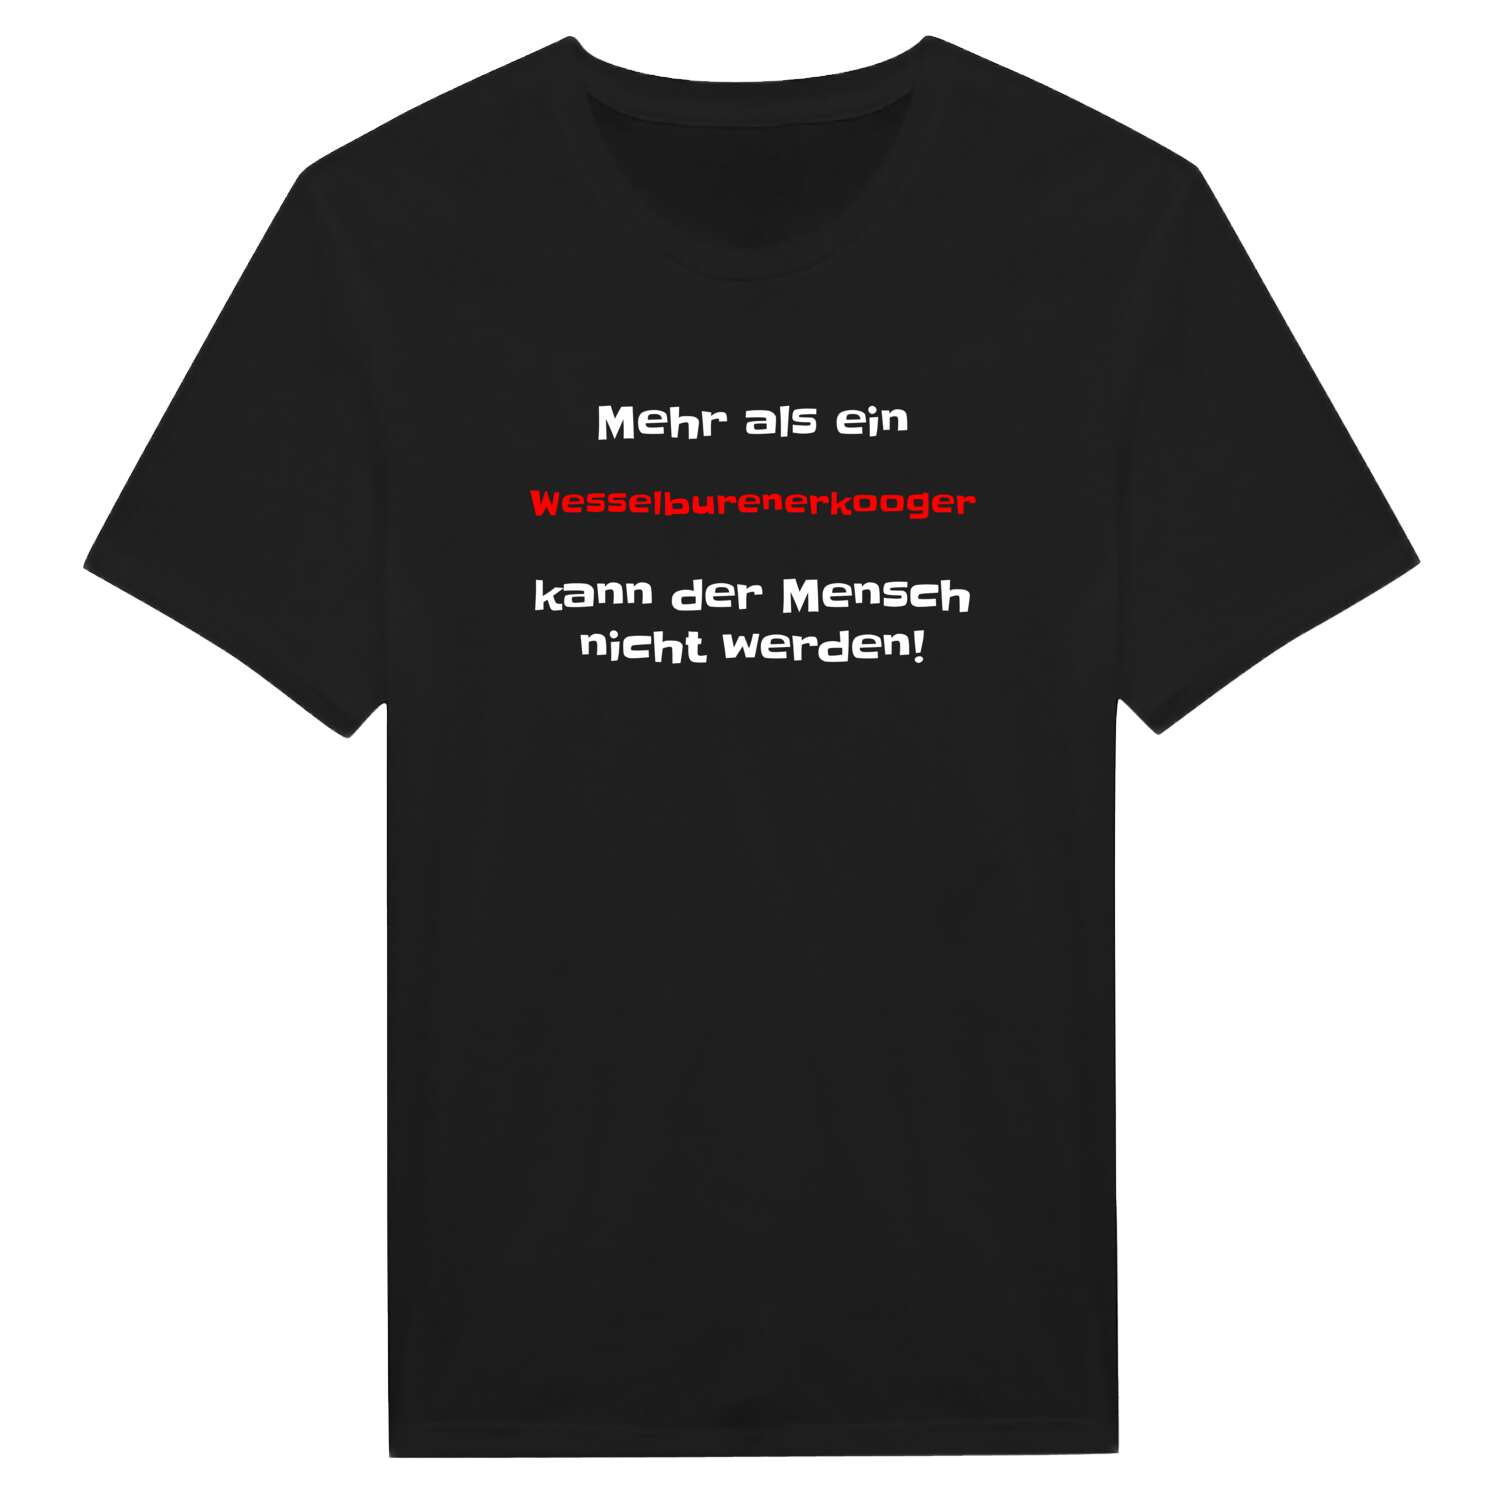 Wesselburenerkoog T-Shirt »Mehr als ein«